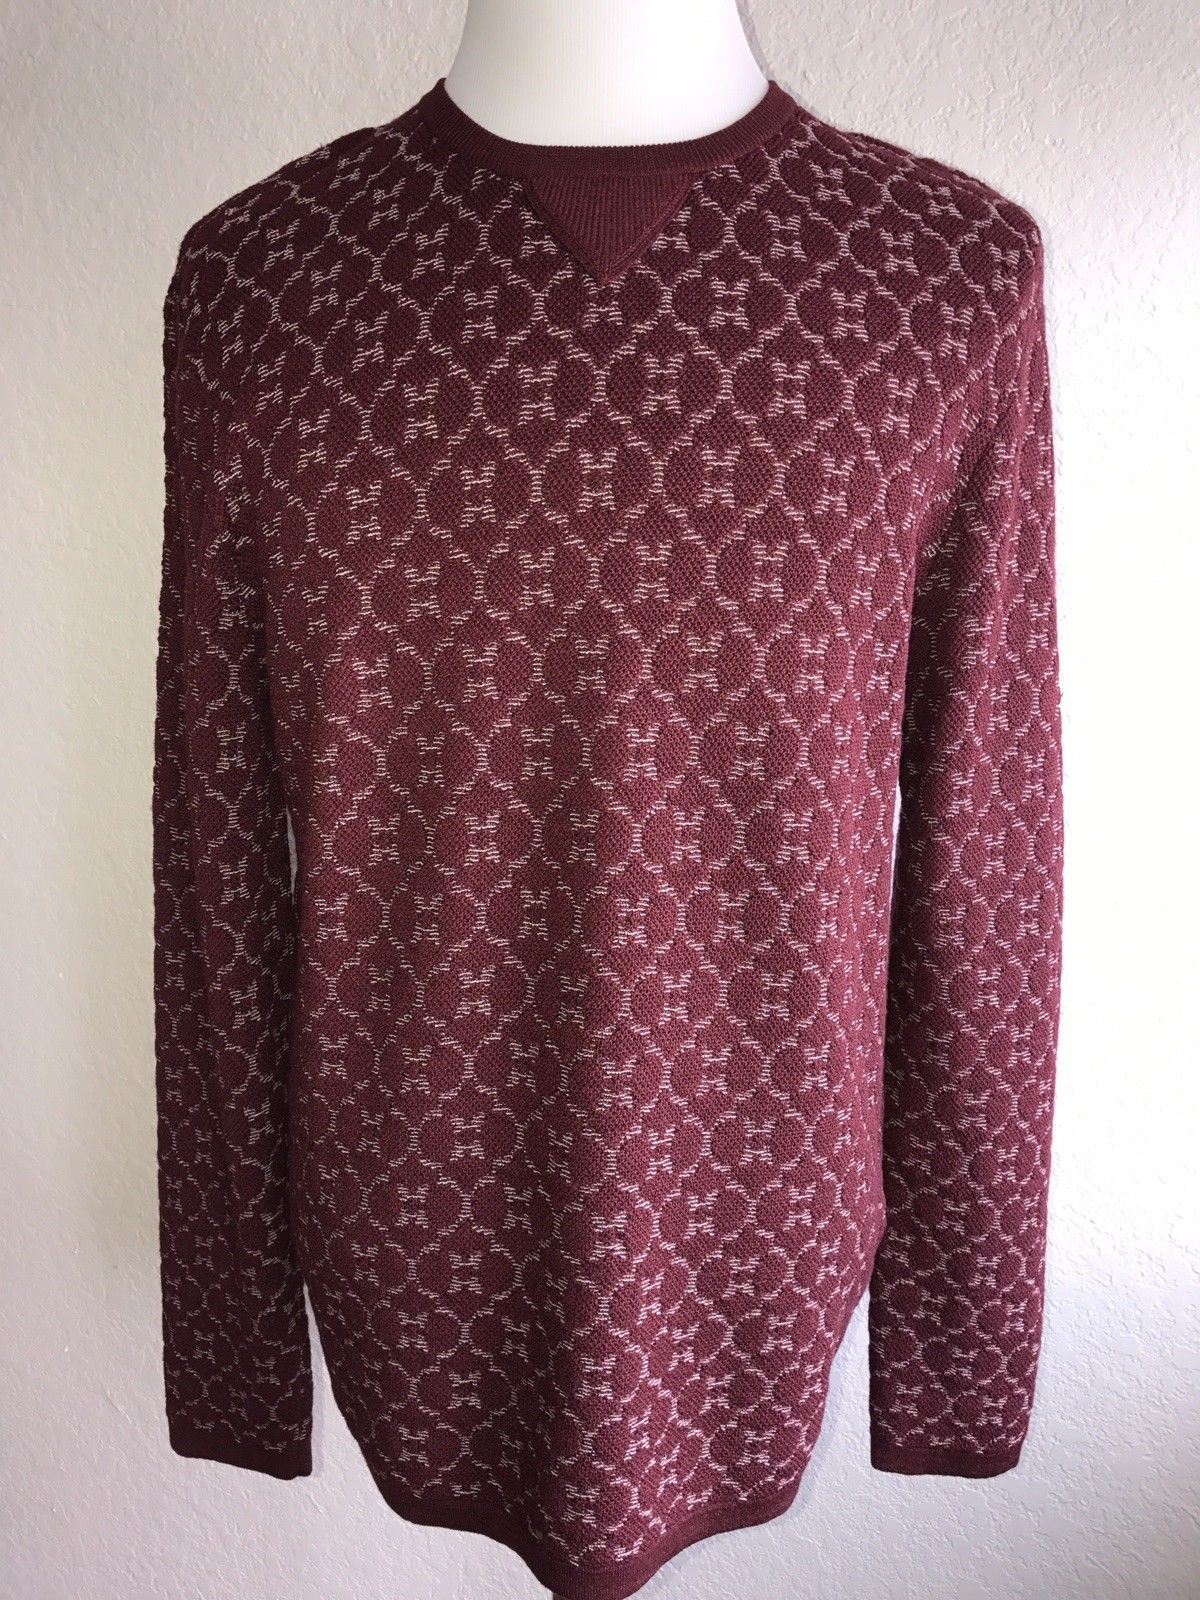 NWT $1895 Giorgio Armani  Knitwear Burgundy Long Sleeves Sweater 56 EU 3YSM19